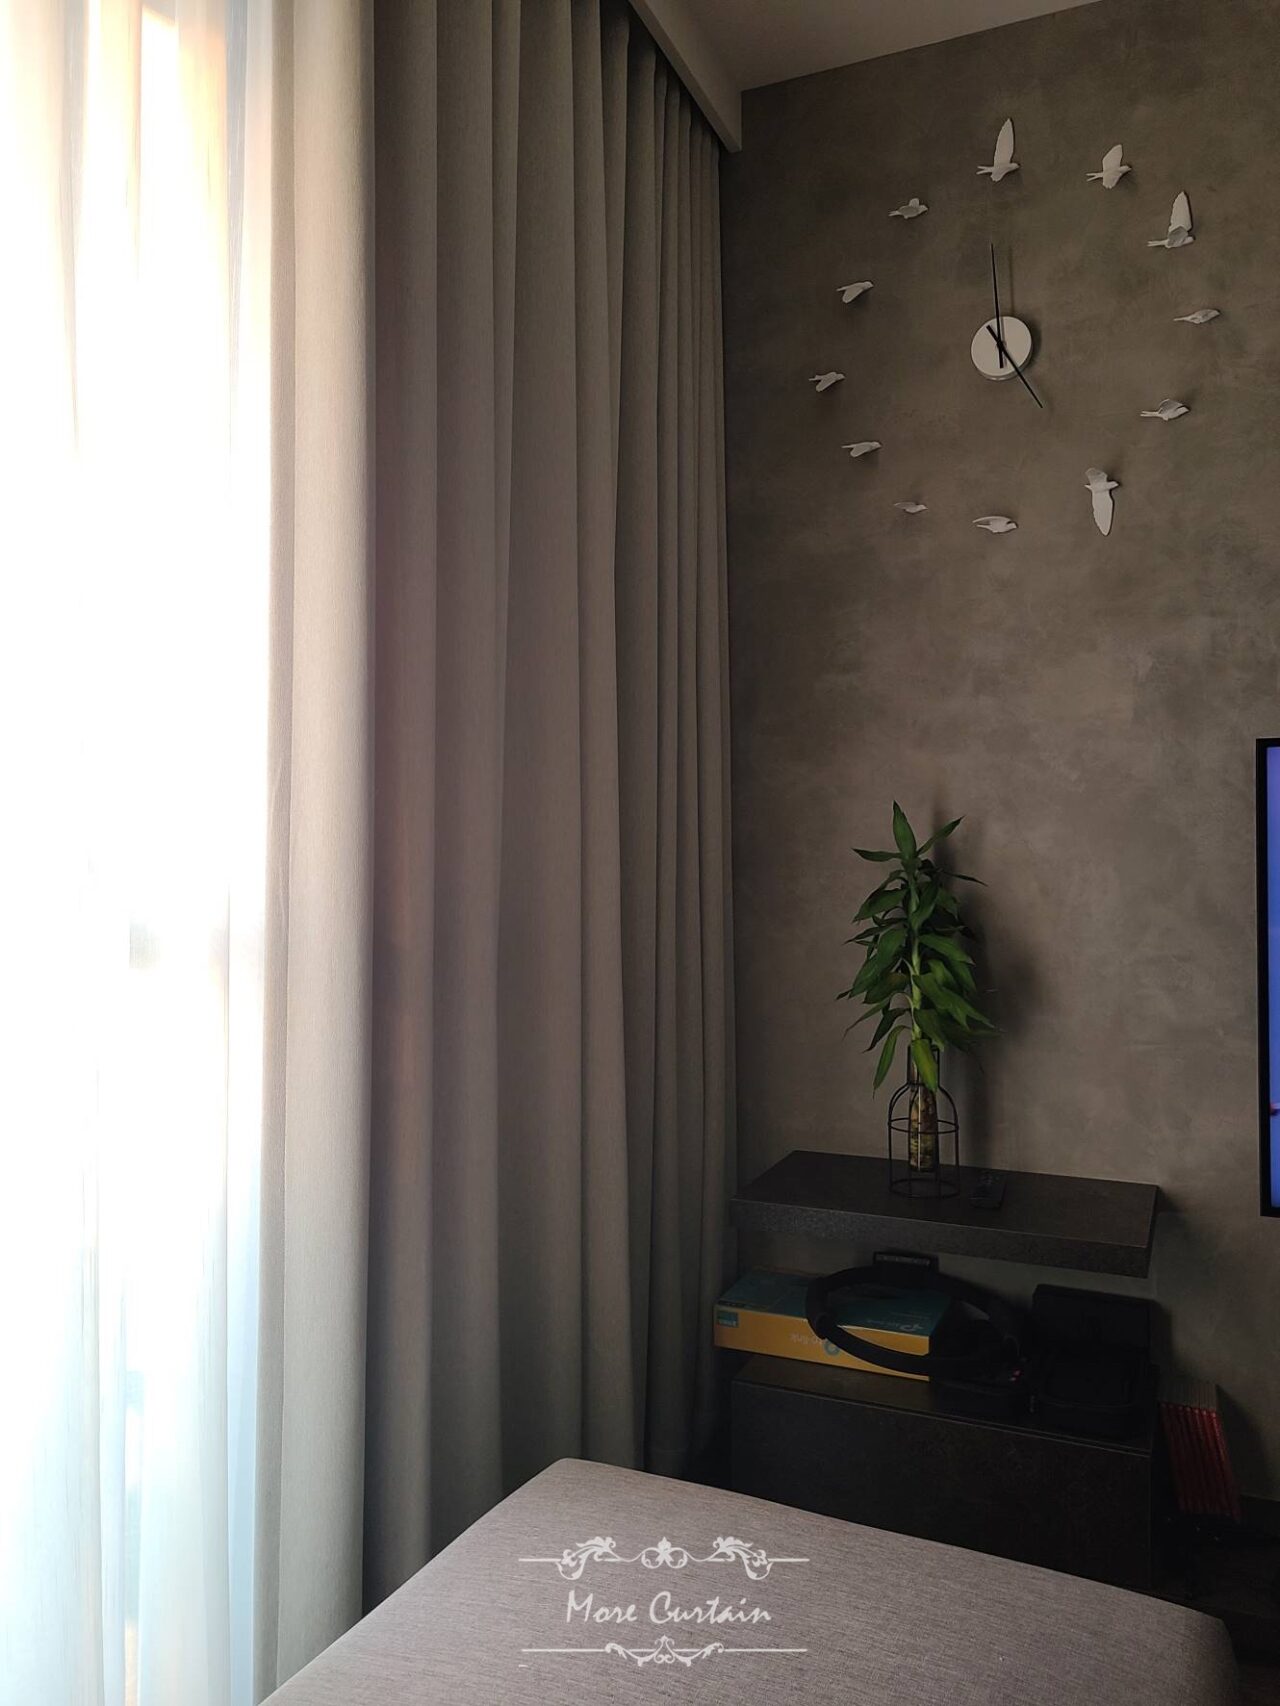 布簾加上紗簾是最常見的居家窗簾組合。尤其是使用在大片落地窗的客廳。既能發揮阻擋光線，也方便自由進出陽台。